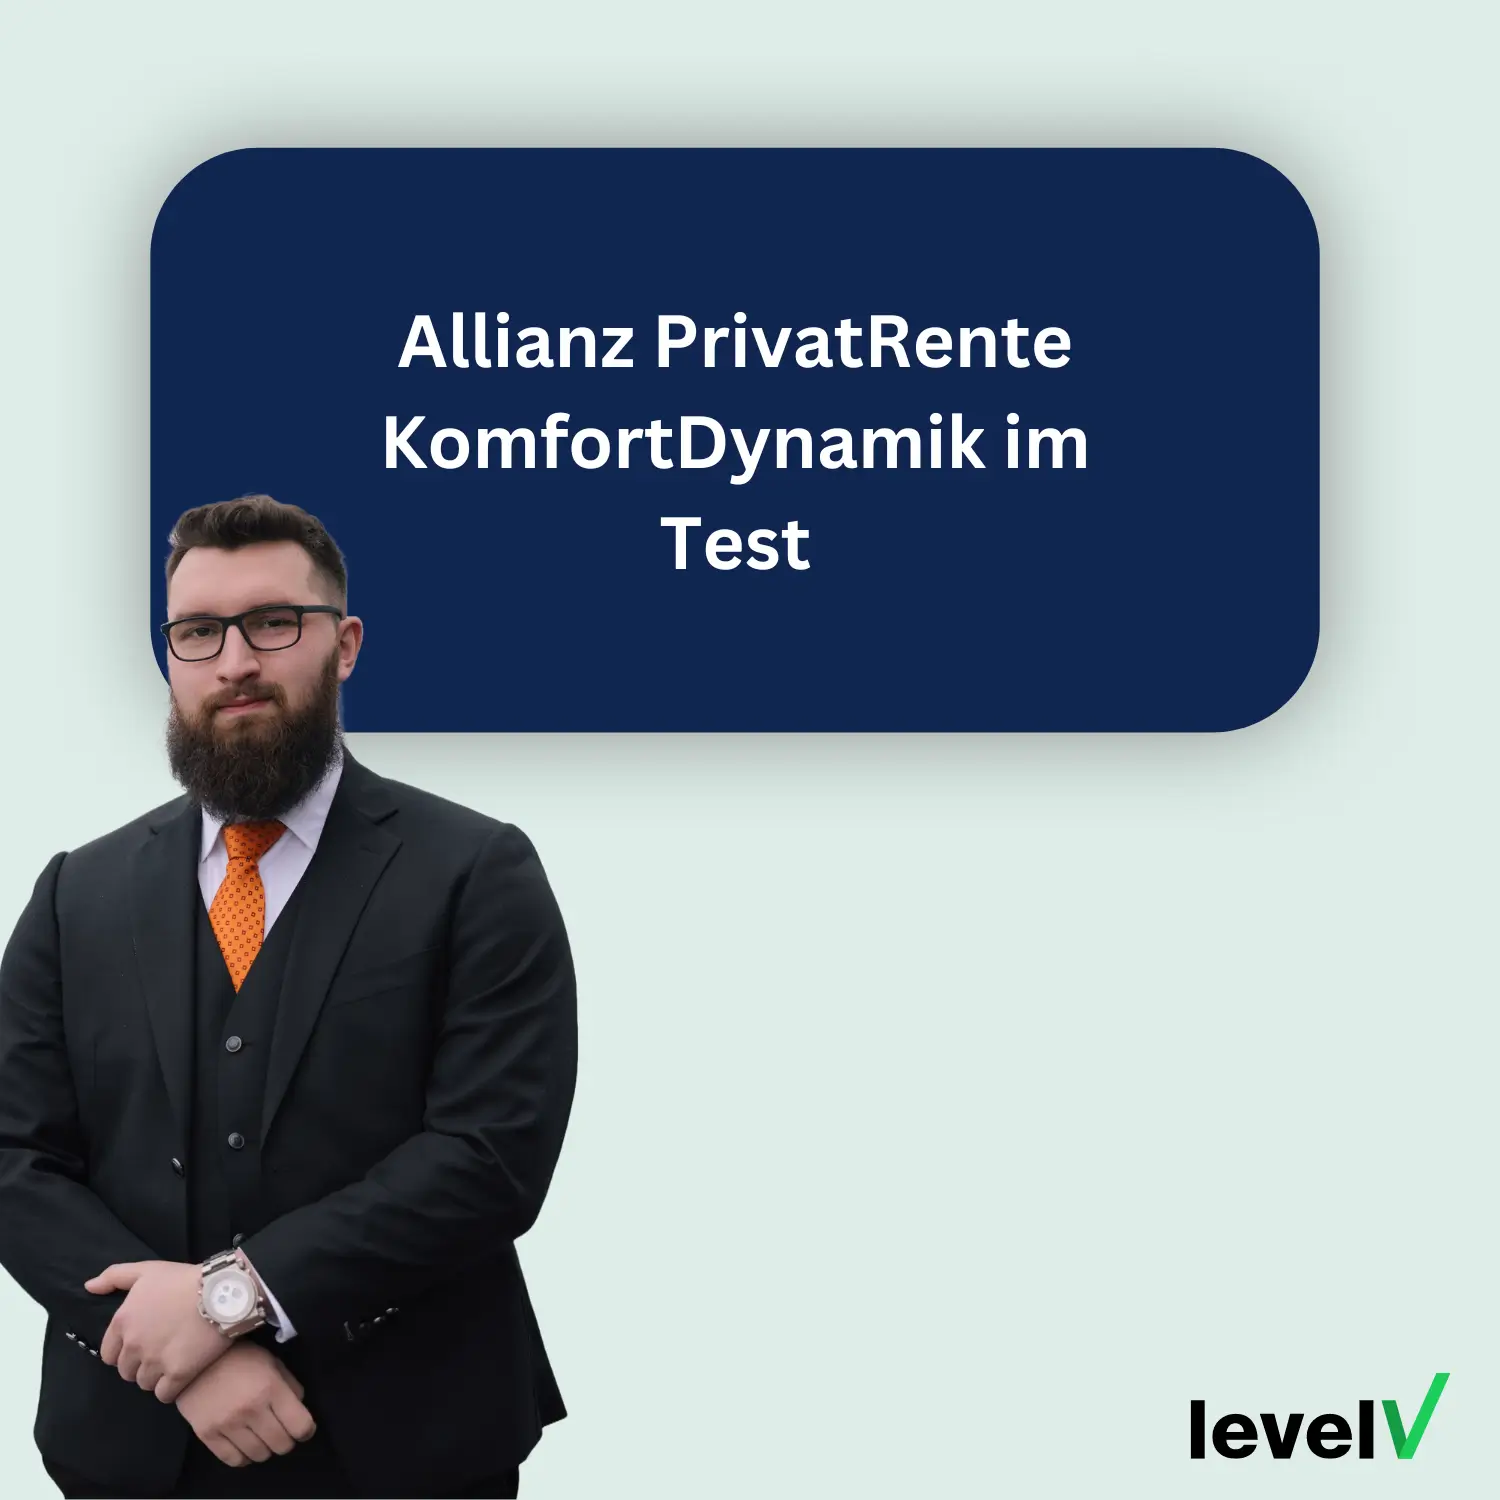 Allianz PrivatRente KomfortDynamik im Test